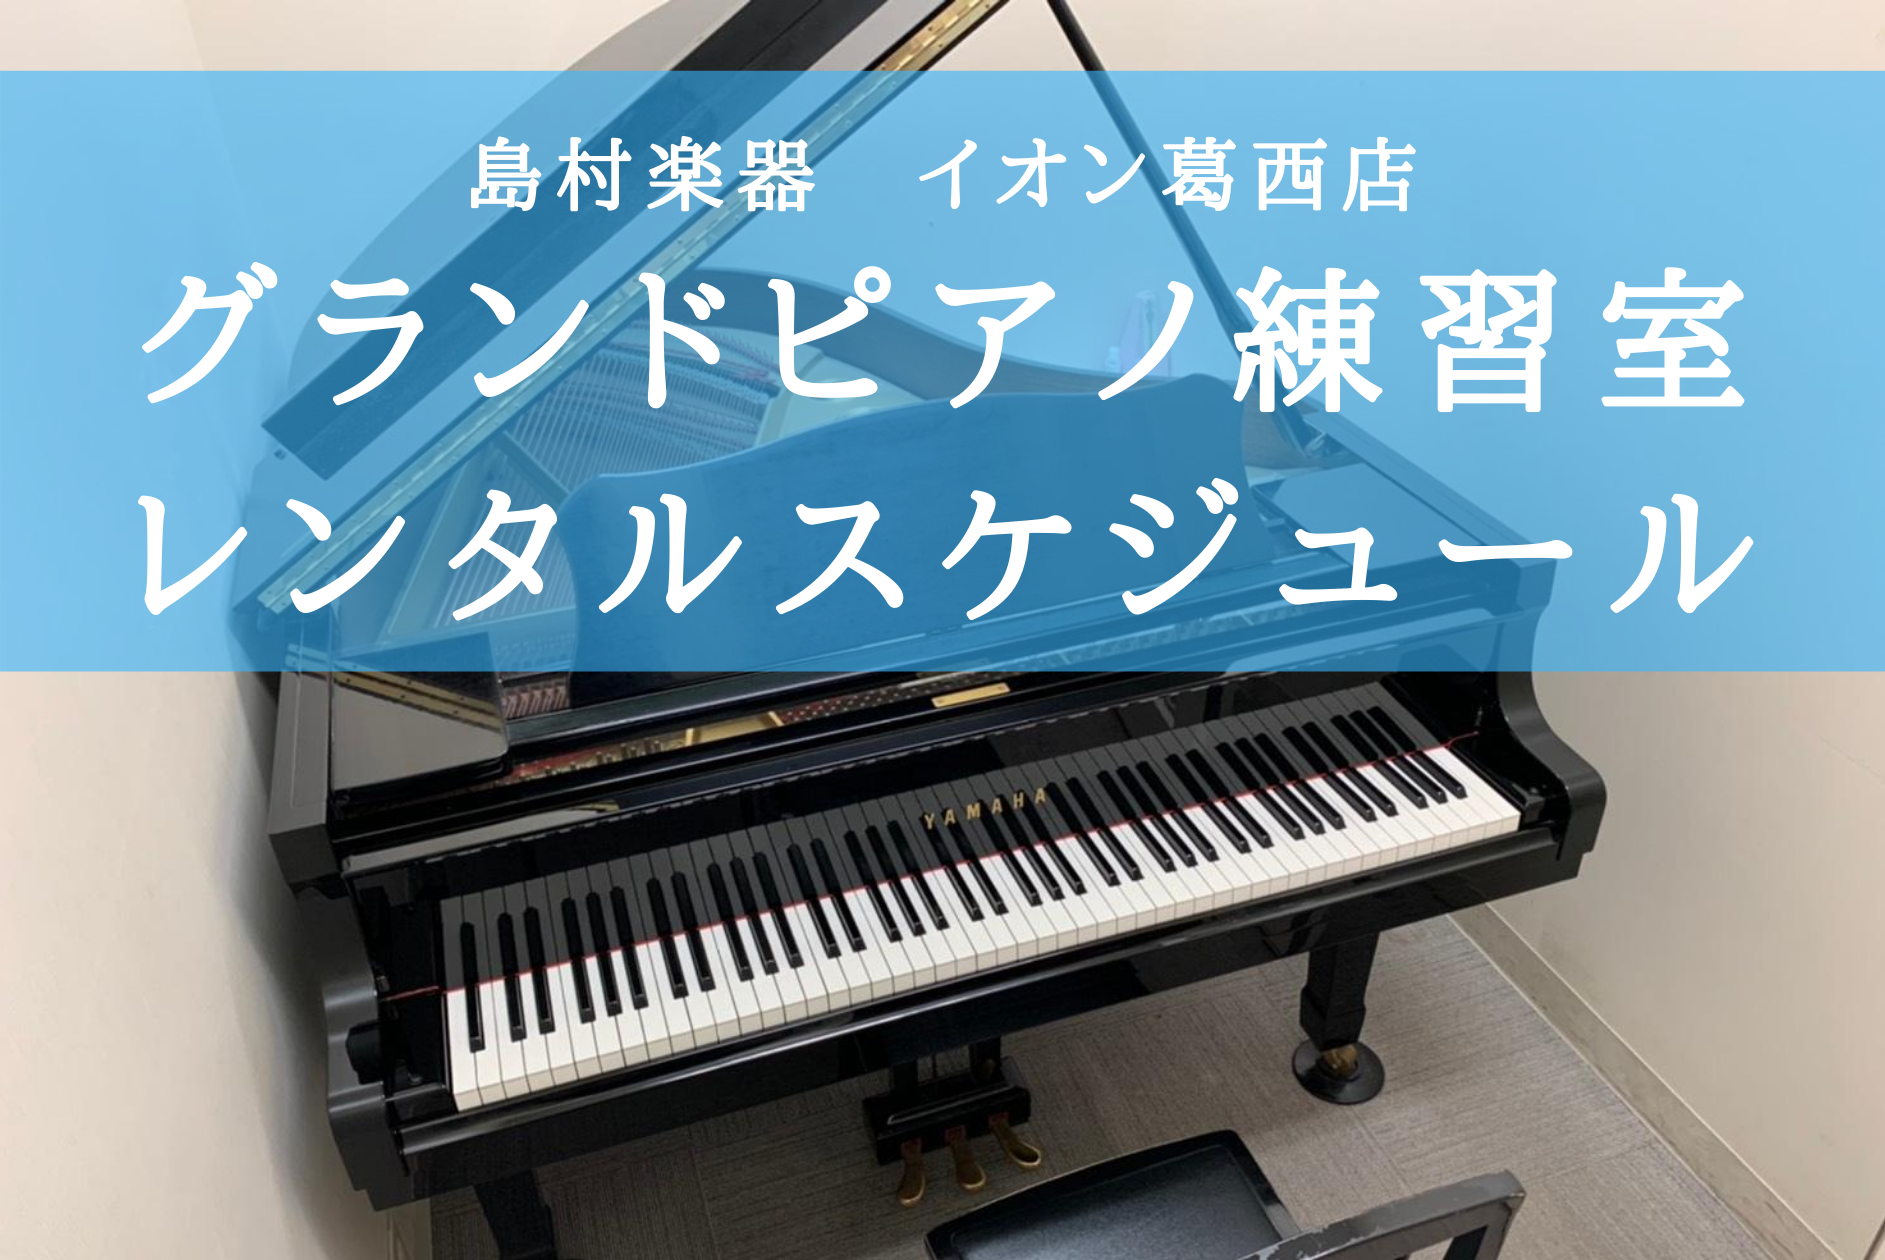 グランドピアノ練習室レンタル 4月 5月スケジュール イオン葛西店 店舗情報 島村楽器